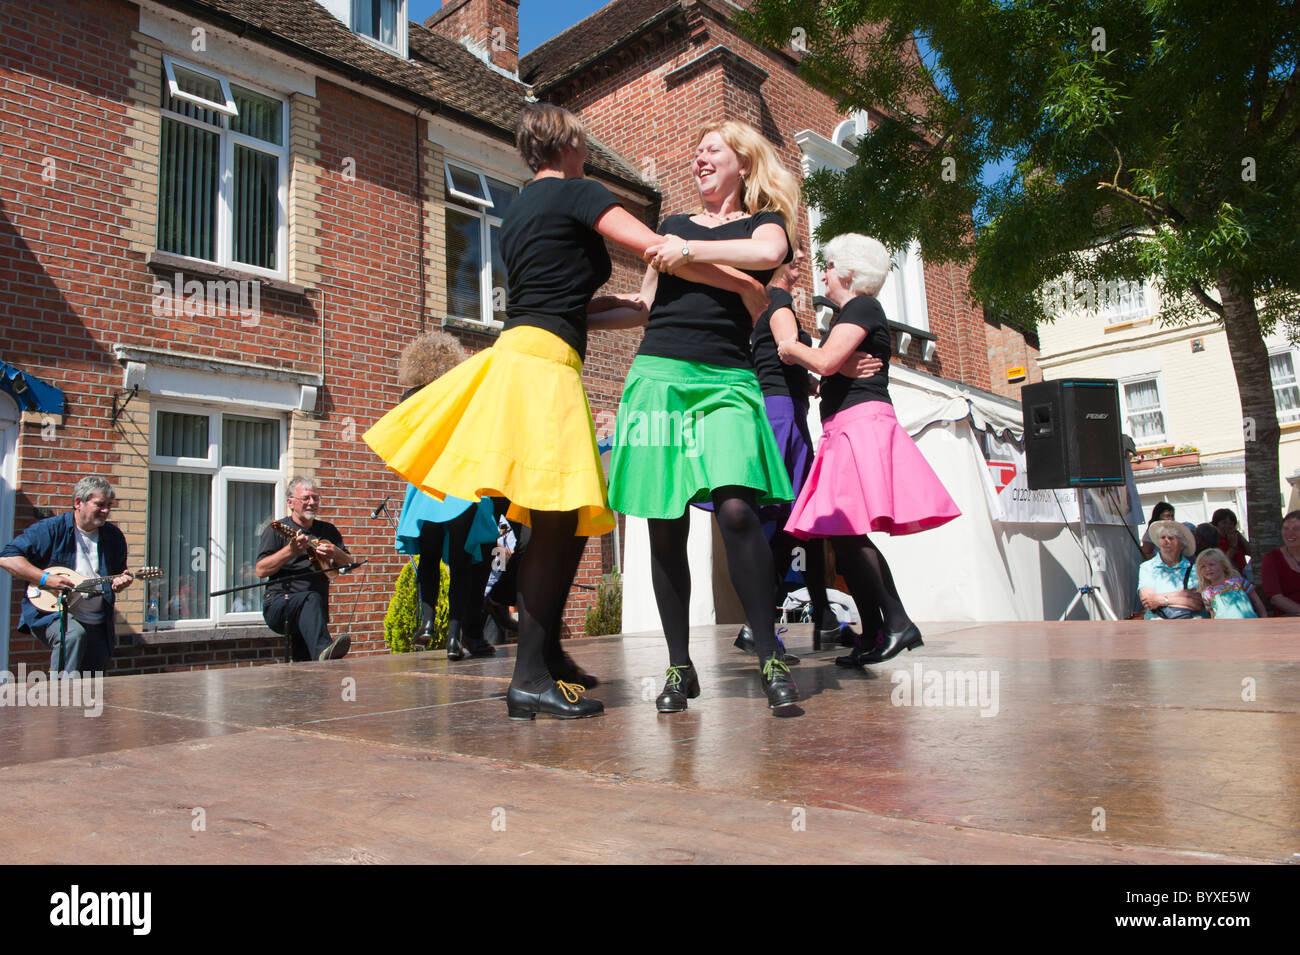 Les danseurs au festival folklorique de Wimborne Minster Banque D'Images